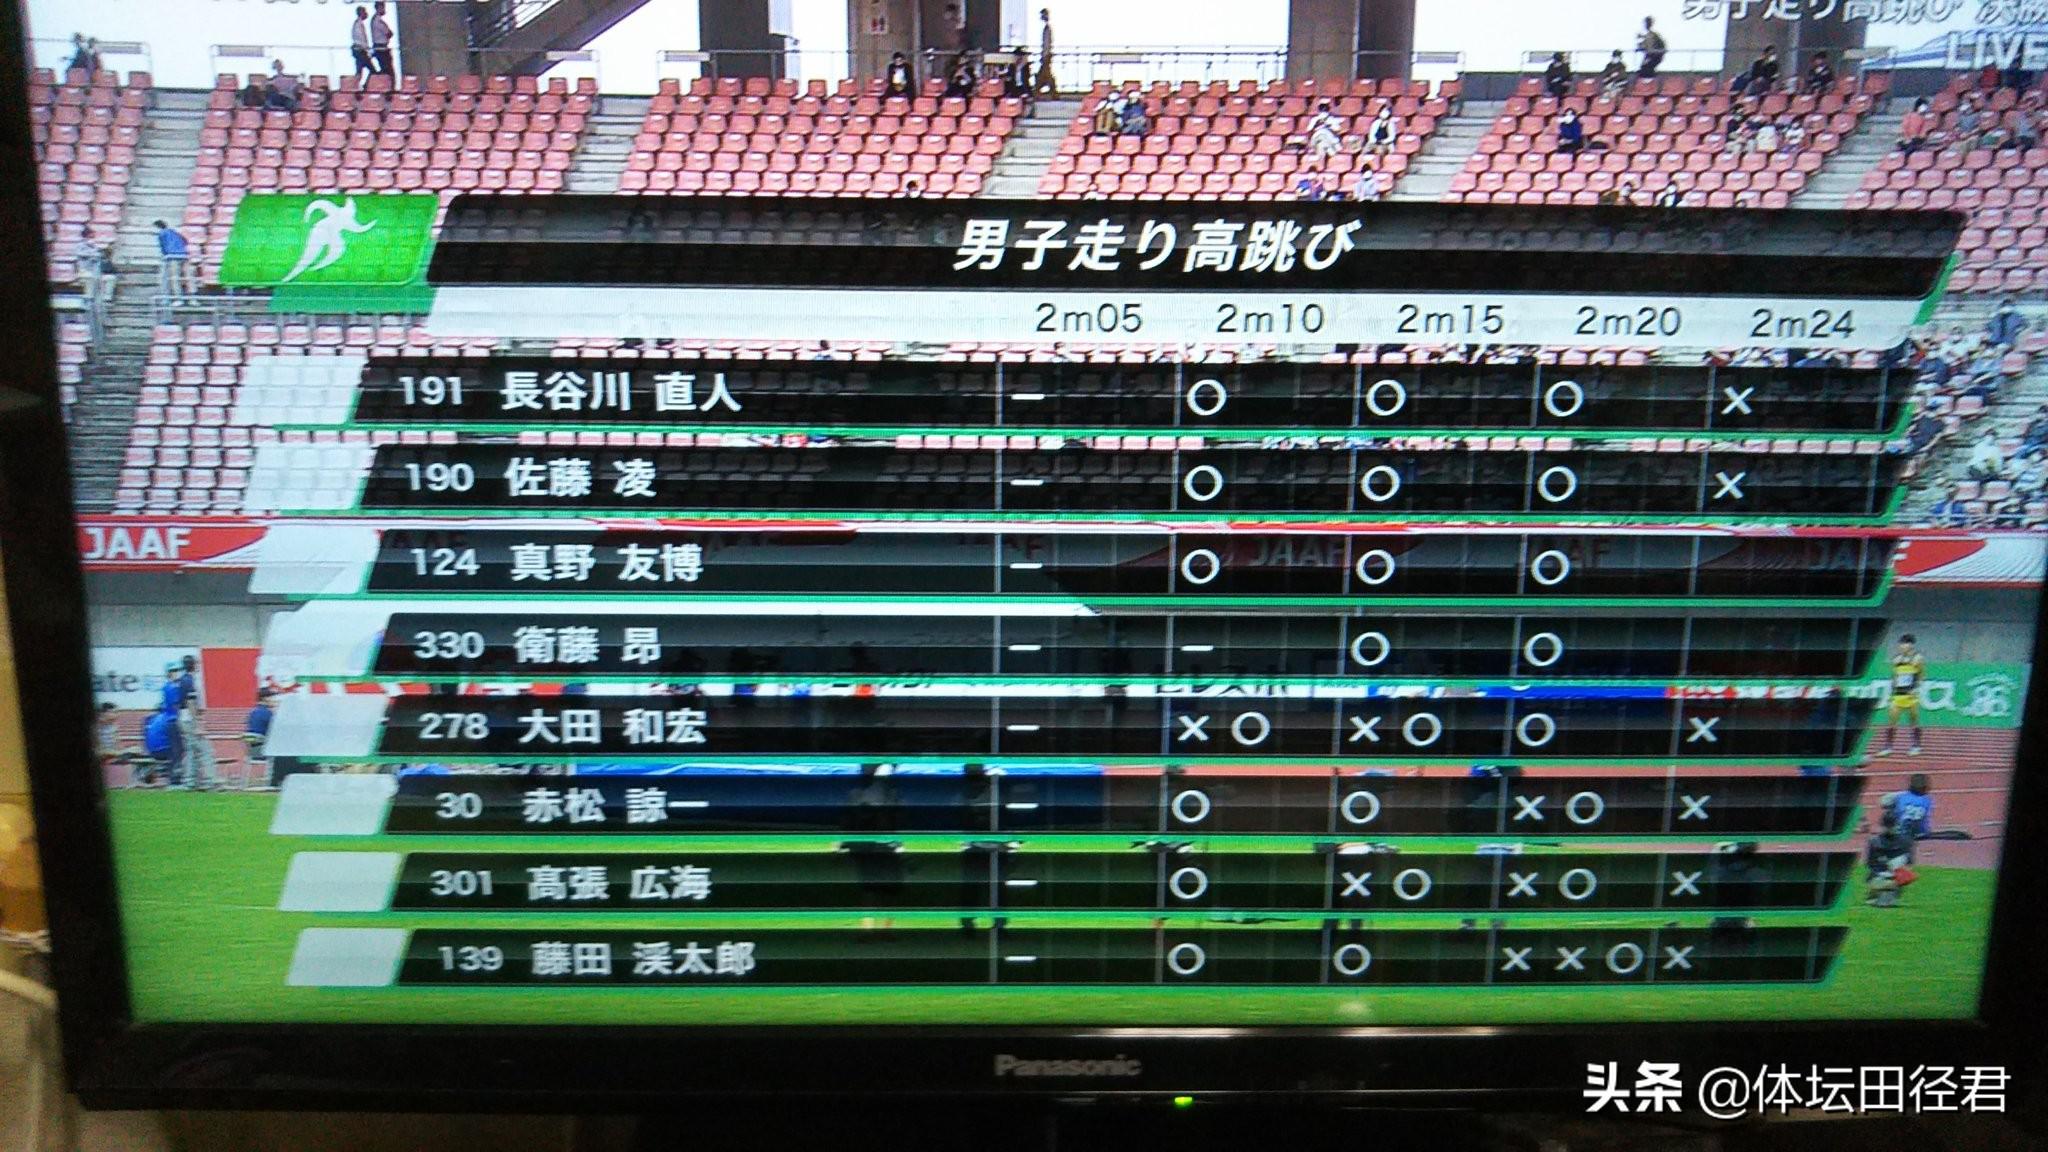 日本新星再过2米30夺冠排世界第二张国伟退役王宇难撑大局(5)